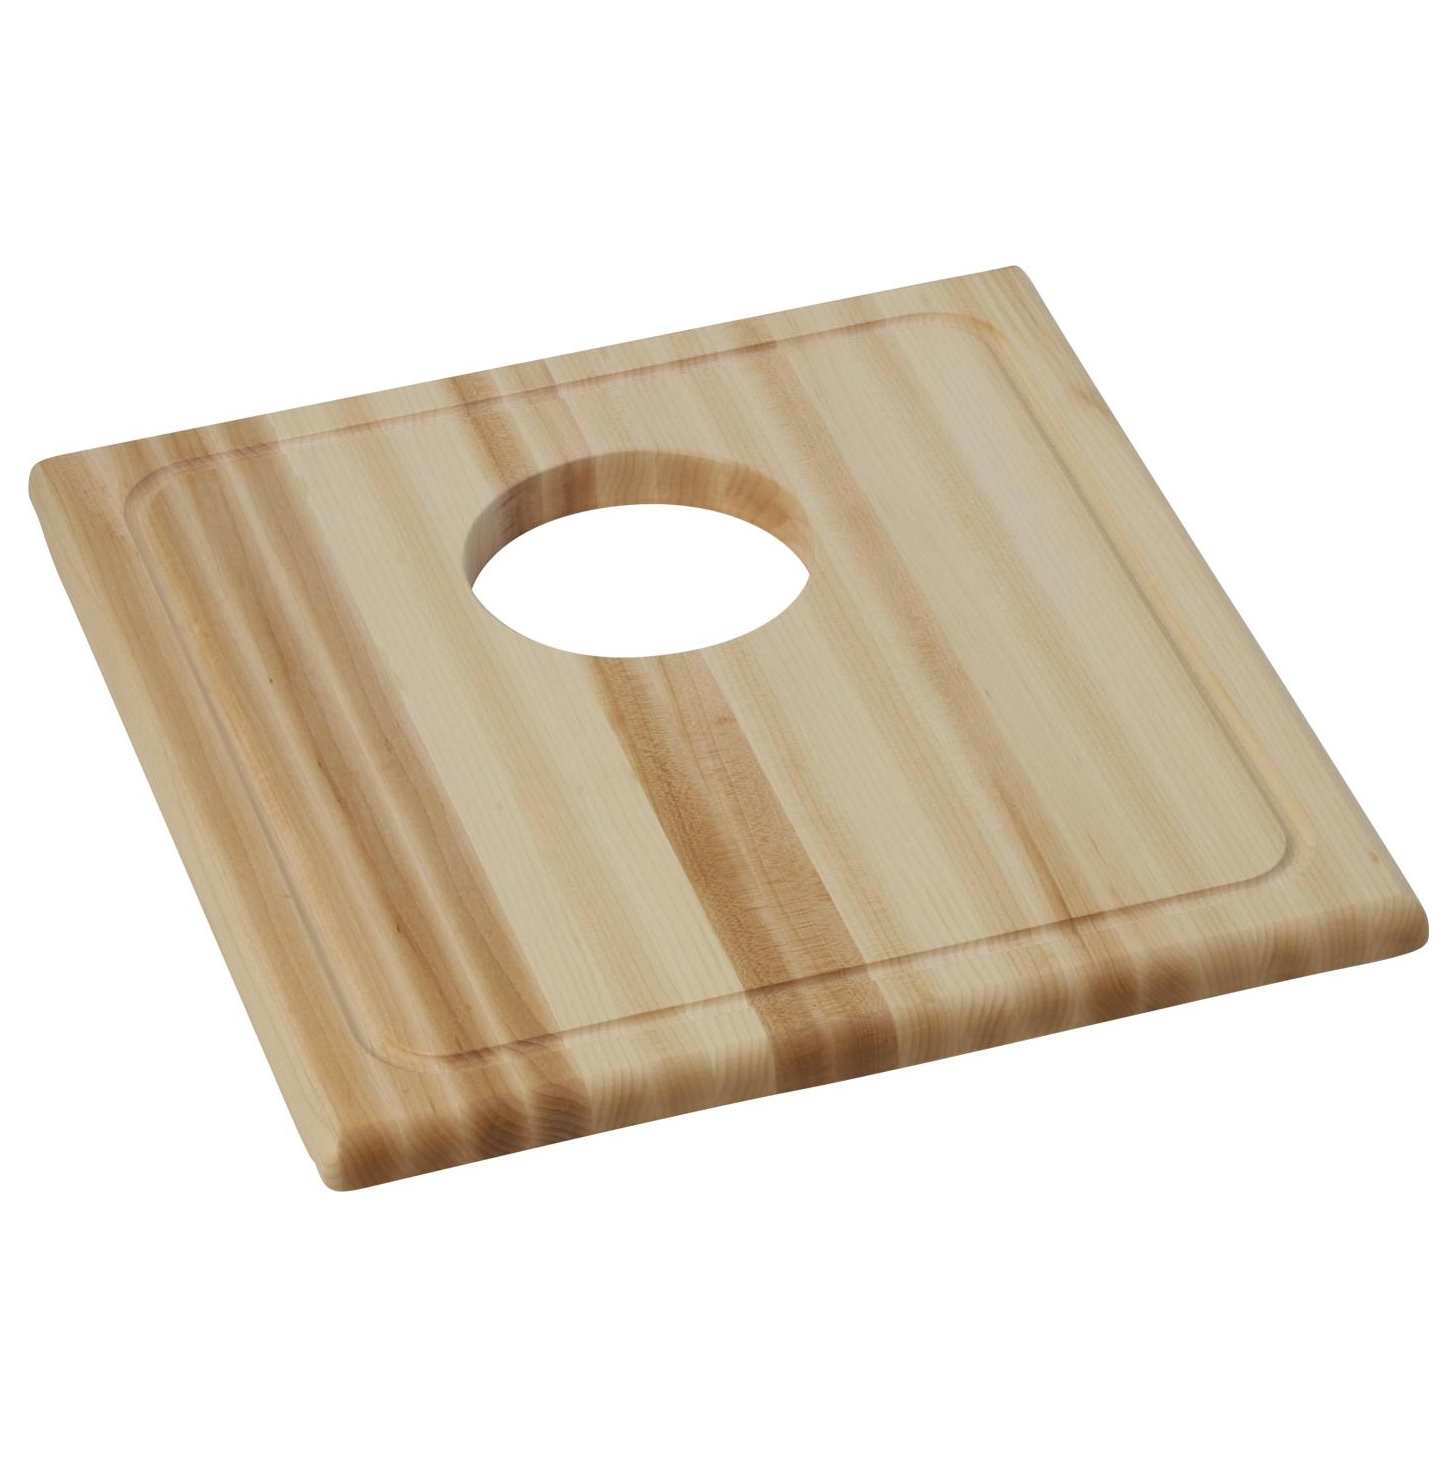 Hardwood 15-1/2x16-7/8x1" Cutting Board